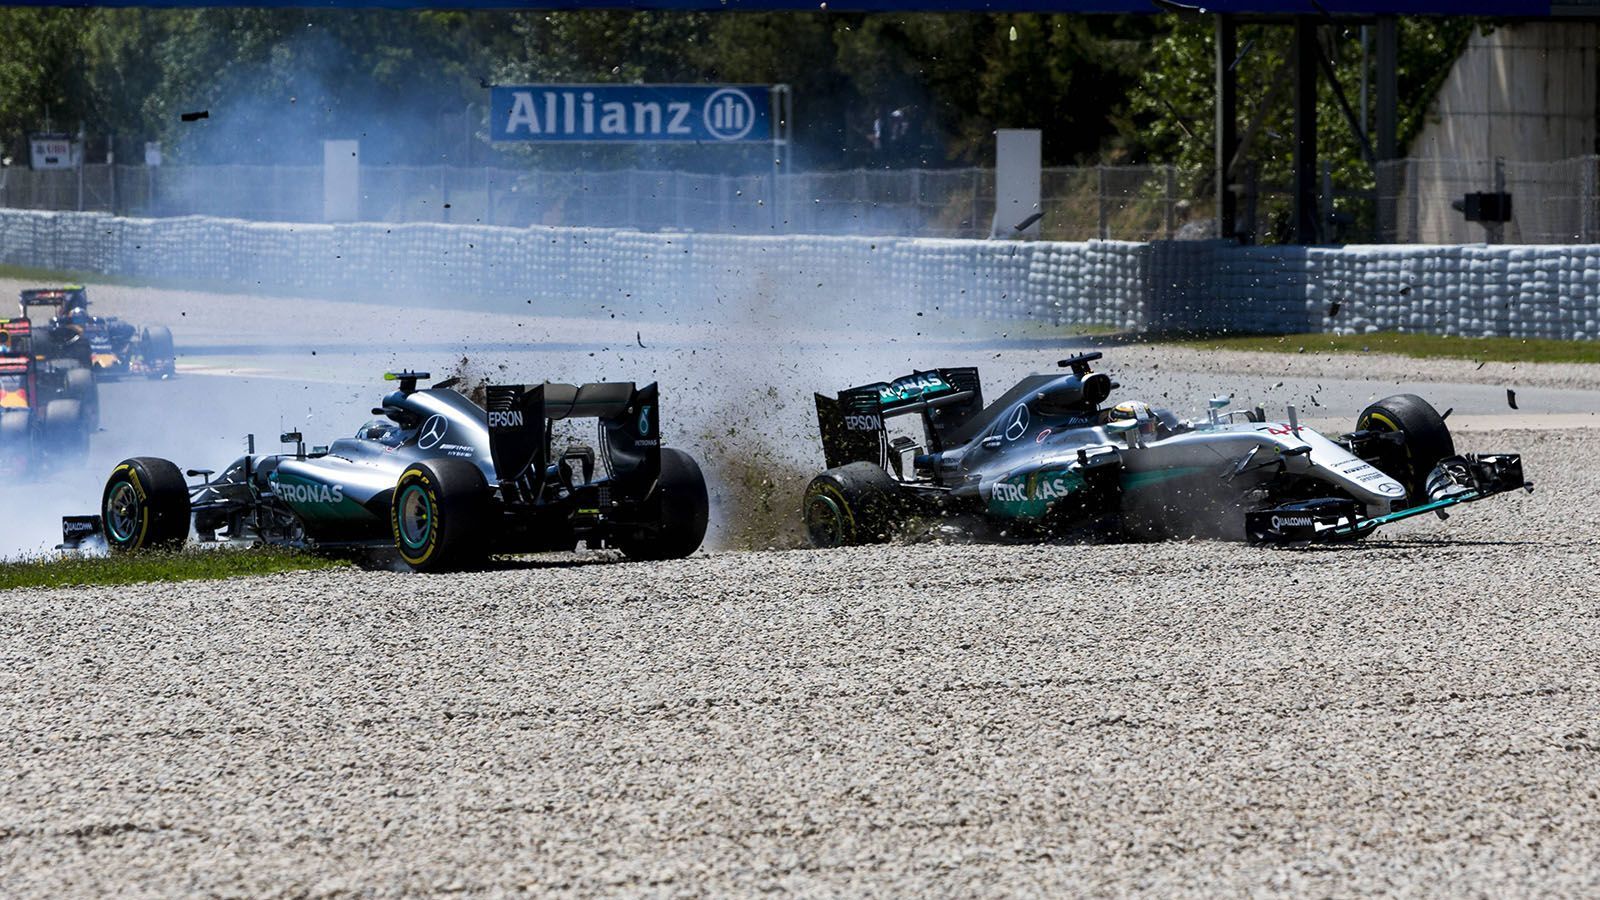 
                <strong>Lewis Hamilton gegen Nico Rosberg (Mercedes)</strong><br>
                2013 wechselte Lewis Hamilton, nach sechs F1-Saisons bei McLaren, zu Mercedes. Dort bildete er zusammen mit seinem Jugendfreund Nico Rosberg die Fahrerpaarung. In den folgenden Jahren verschlechterte sich die Beziehung der beiden Fahrer zunehmend und fand ihren negativen Höhepunkt 2016 in Barcelona. Kurz nach dem Rennstart kollidierten Hamilton und Rosberg und fanden sich im Kiesbett wieder. Wenige Wochen später verursachte Rosberg einen Crash in Österreich, der ihm letztendlich den Sieg kostete.
              